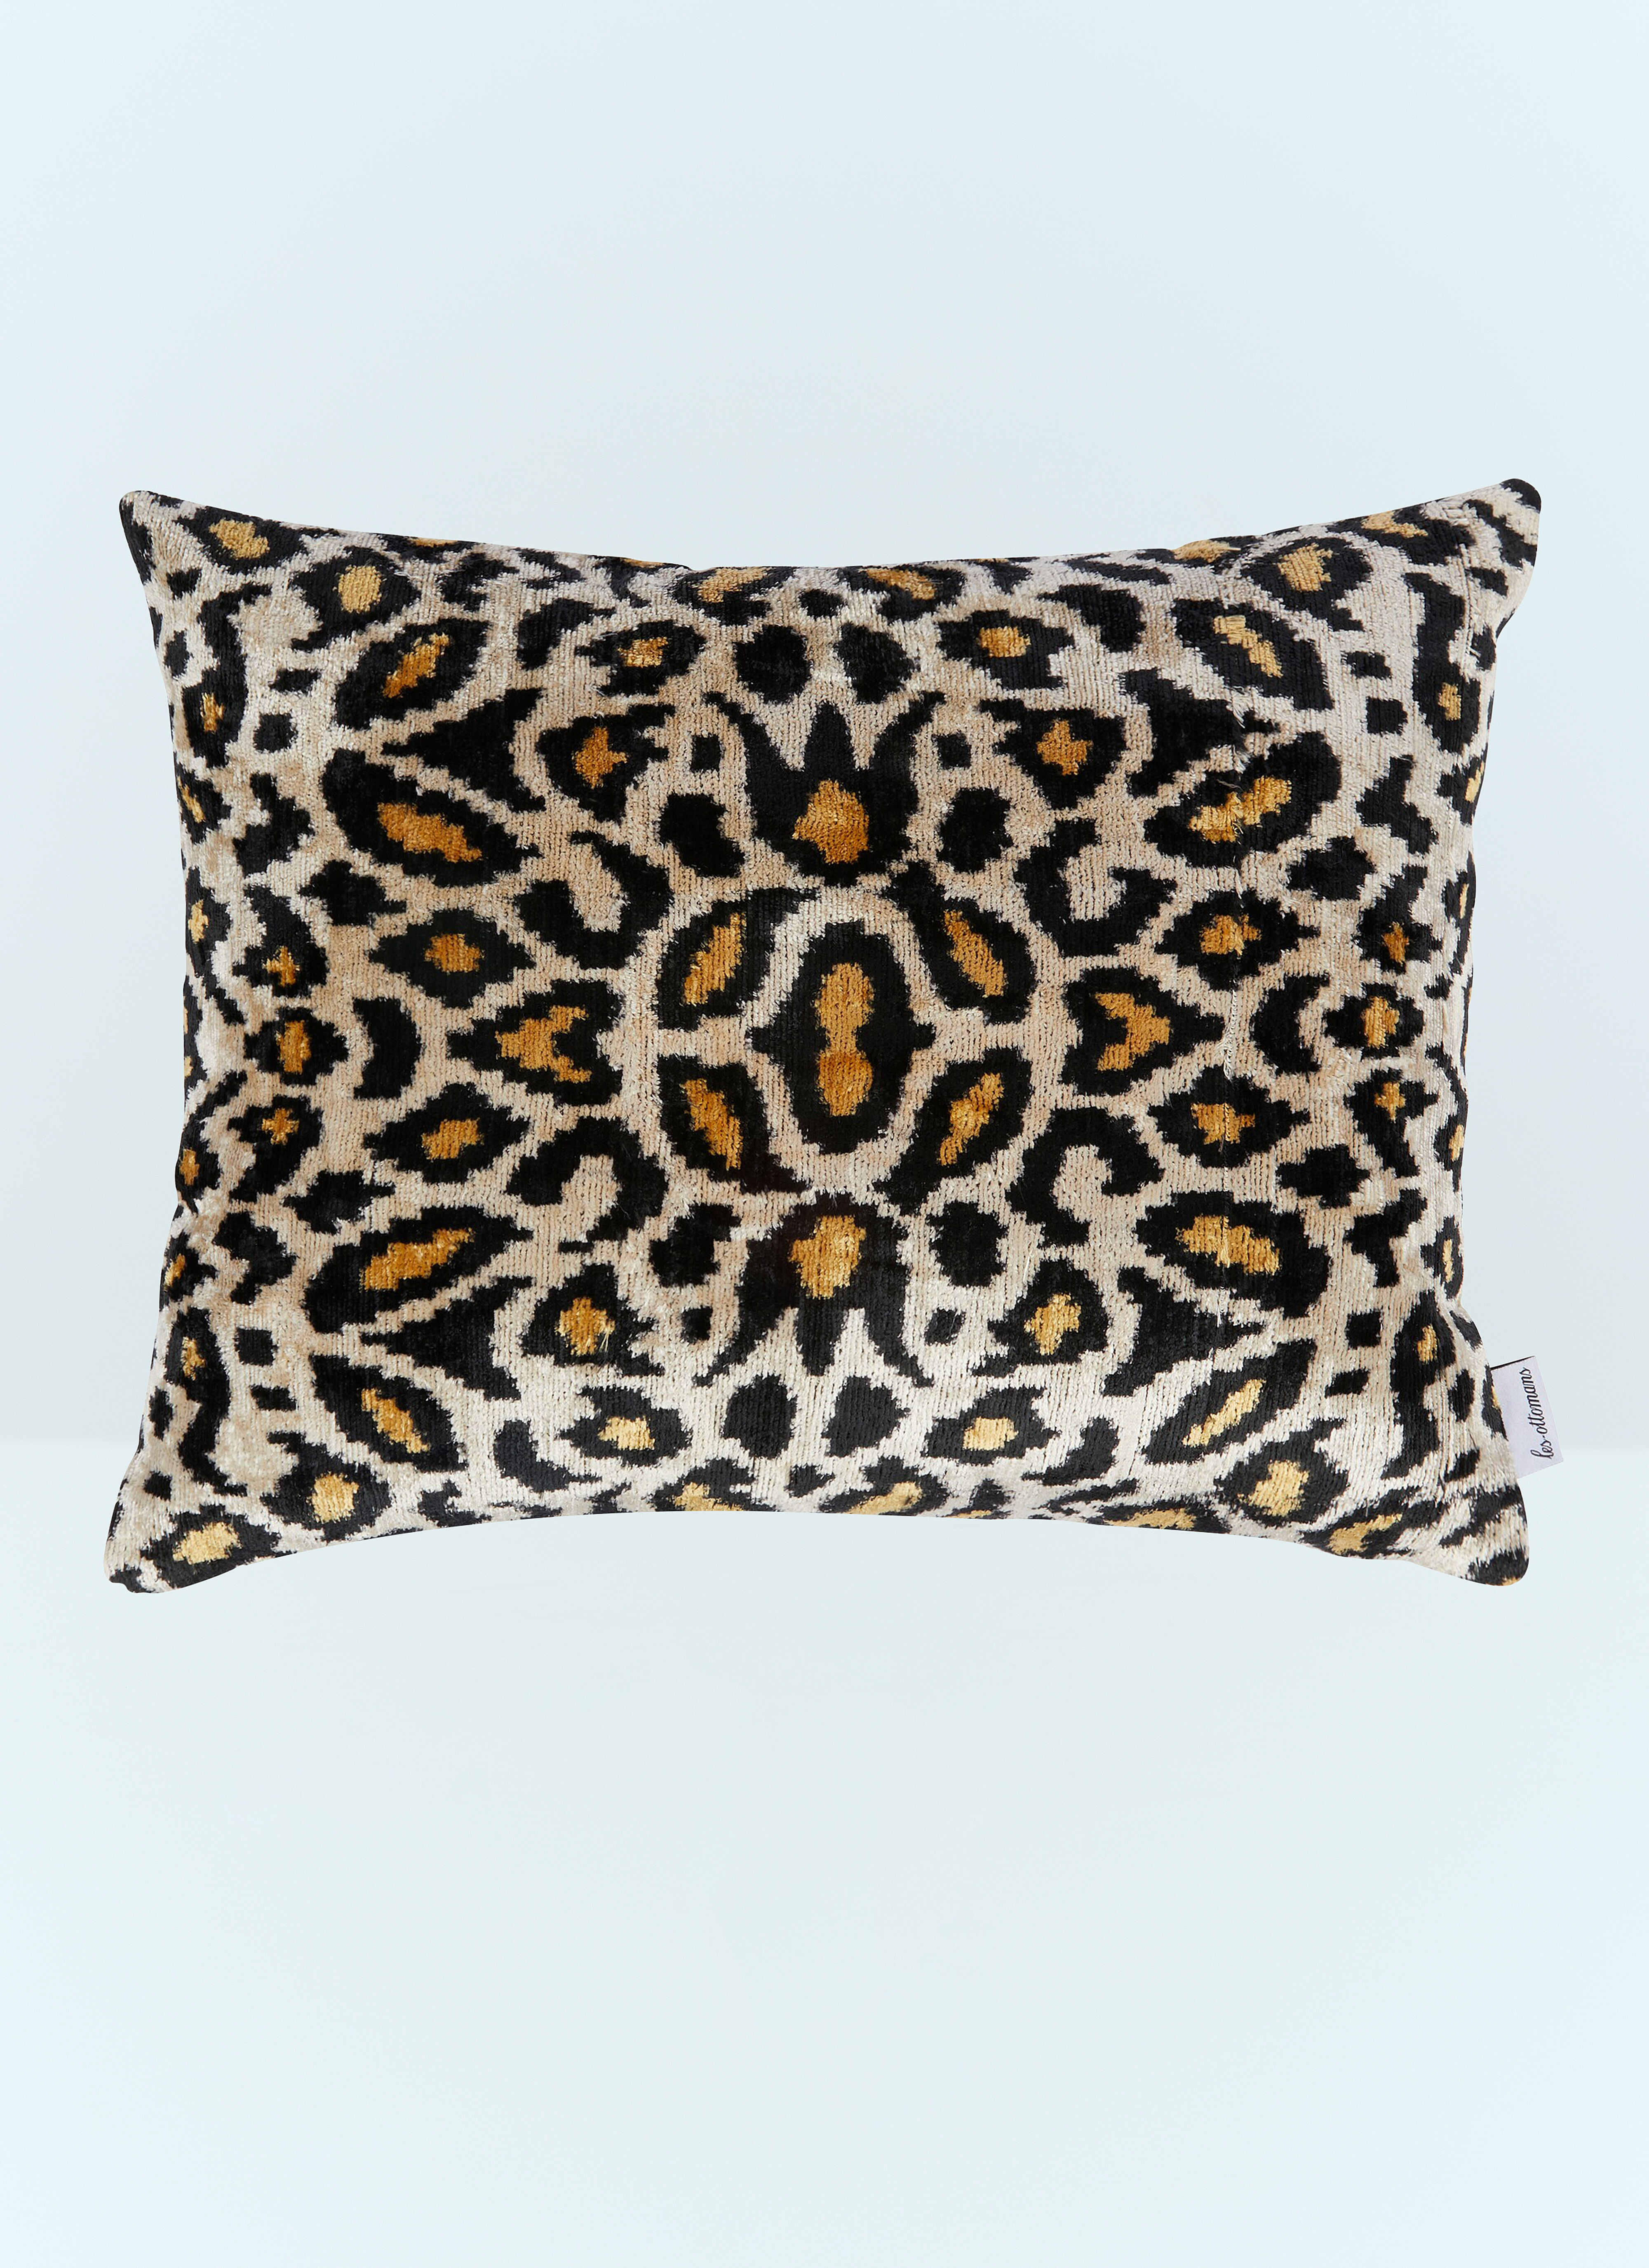 Les Ottomans Leopard Print Velvet Cushion White wps0691173